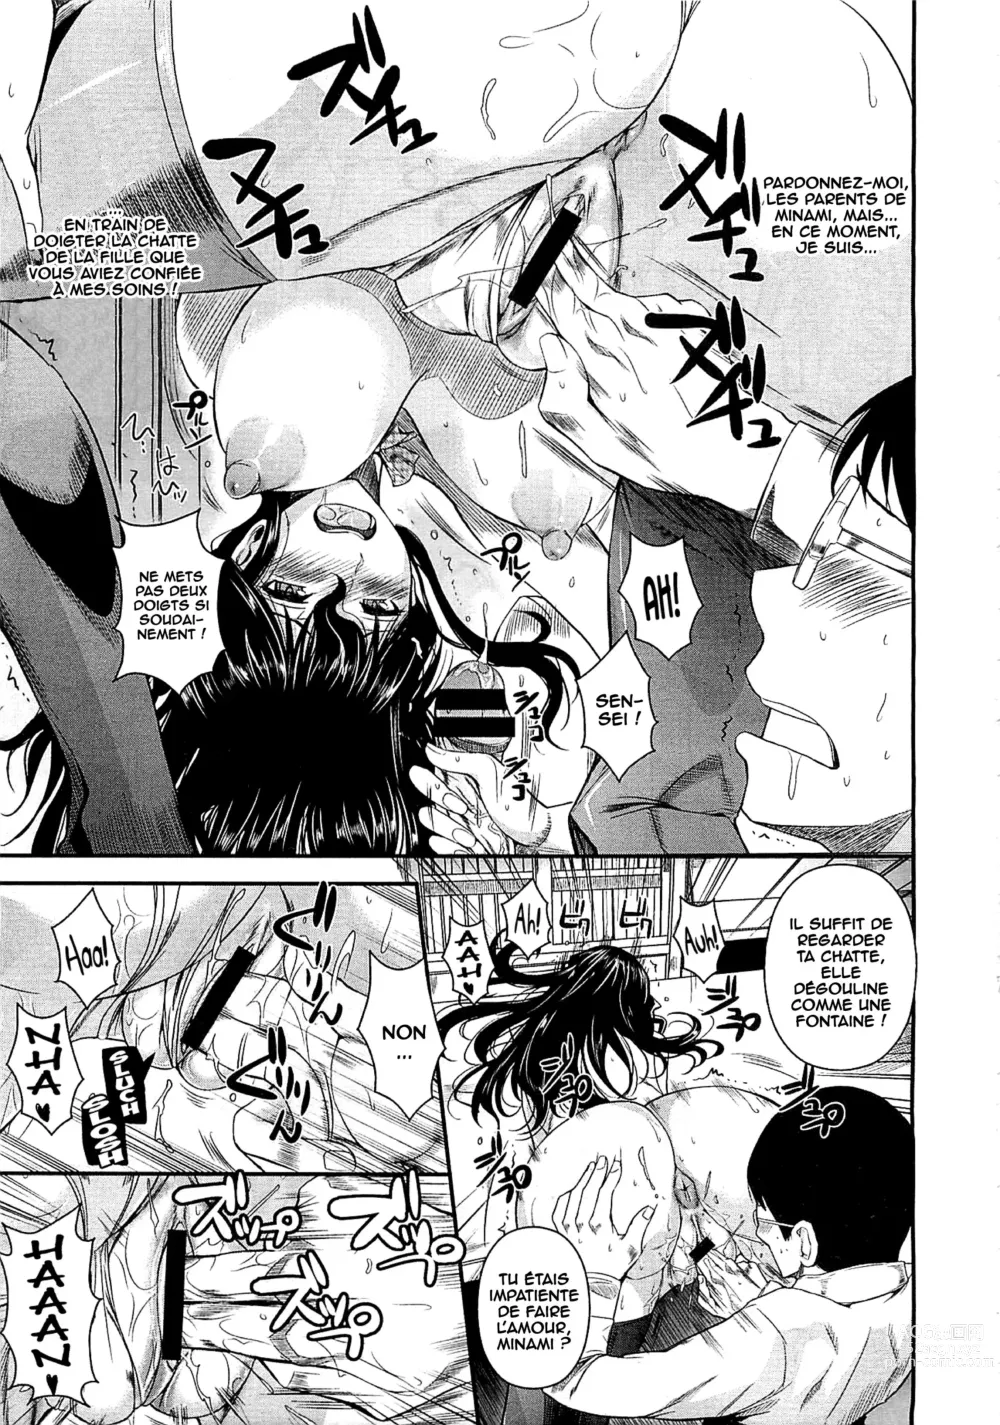 Page 11 of manga Suna Onanie